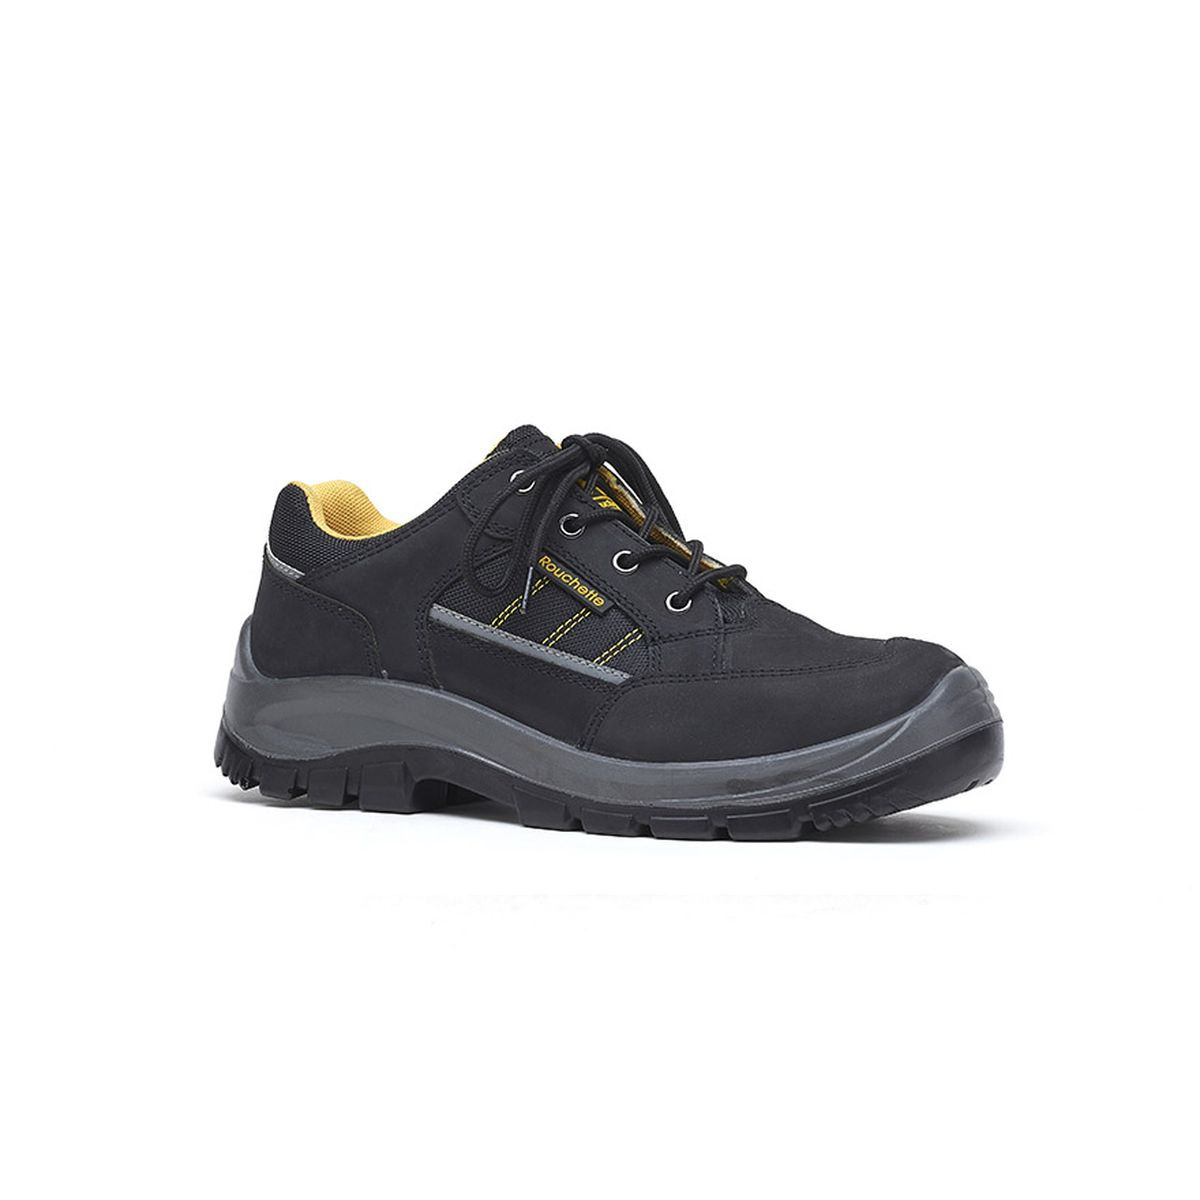 Chaussures de sécurité BOSTON noir et jaune T44